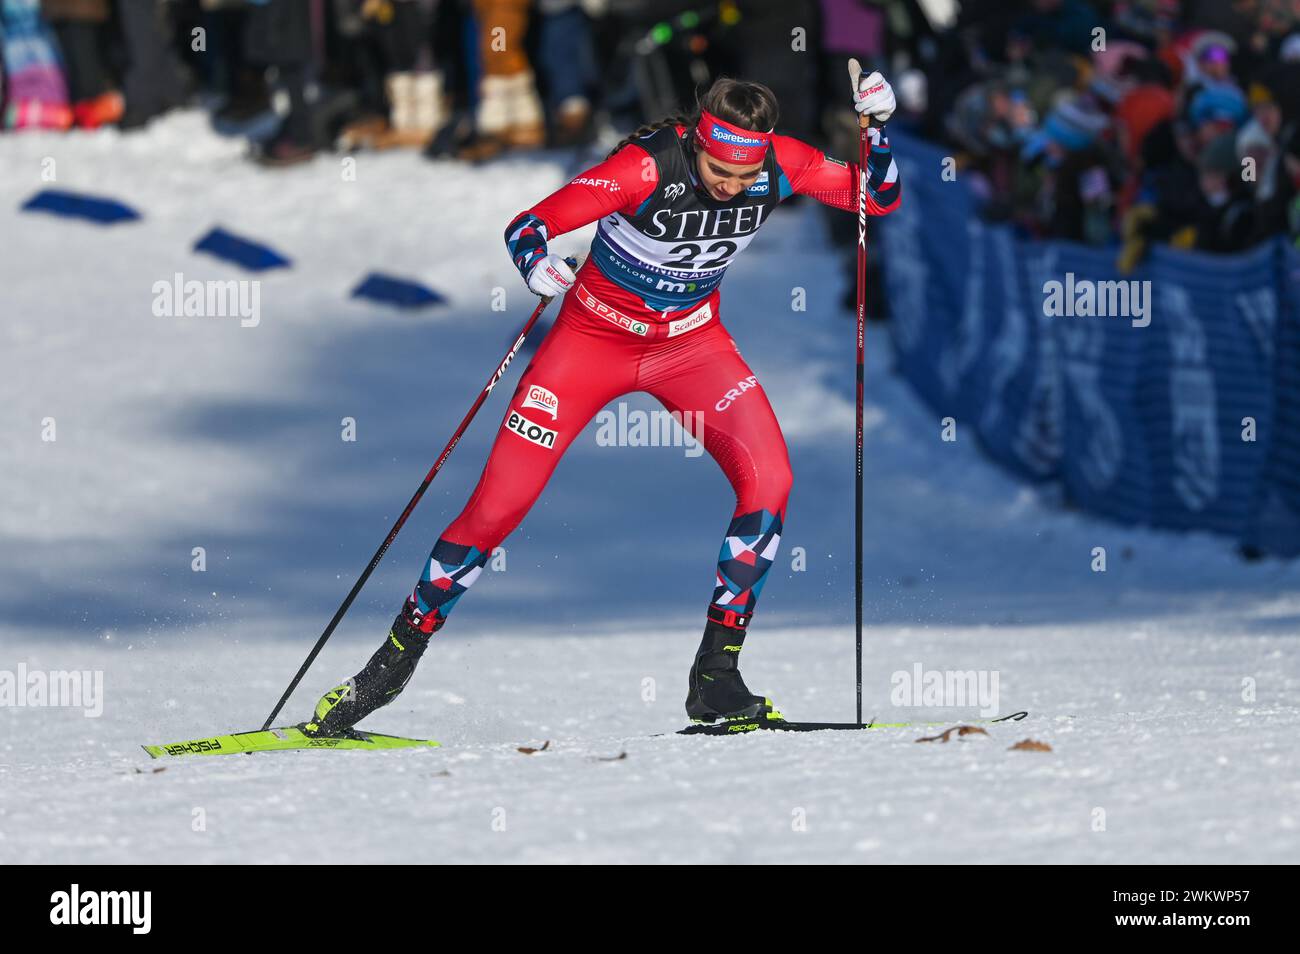 Il norvegese Kristine Stavås Skistad partecipa alla Coppa del mondo di sci di fondo FIS al Theodore Wirth Regional Park di Minneapolis, USA, ALLA Loppet CUP Foto Stock